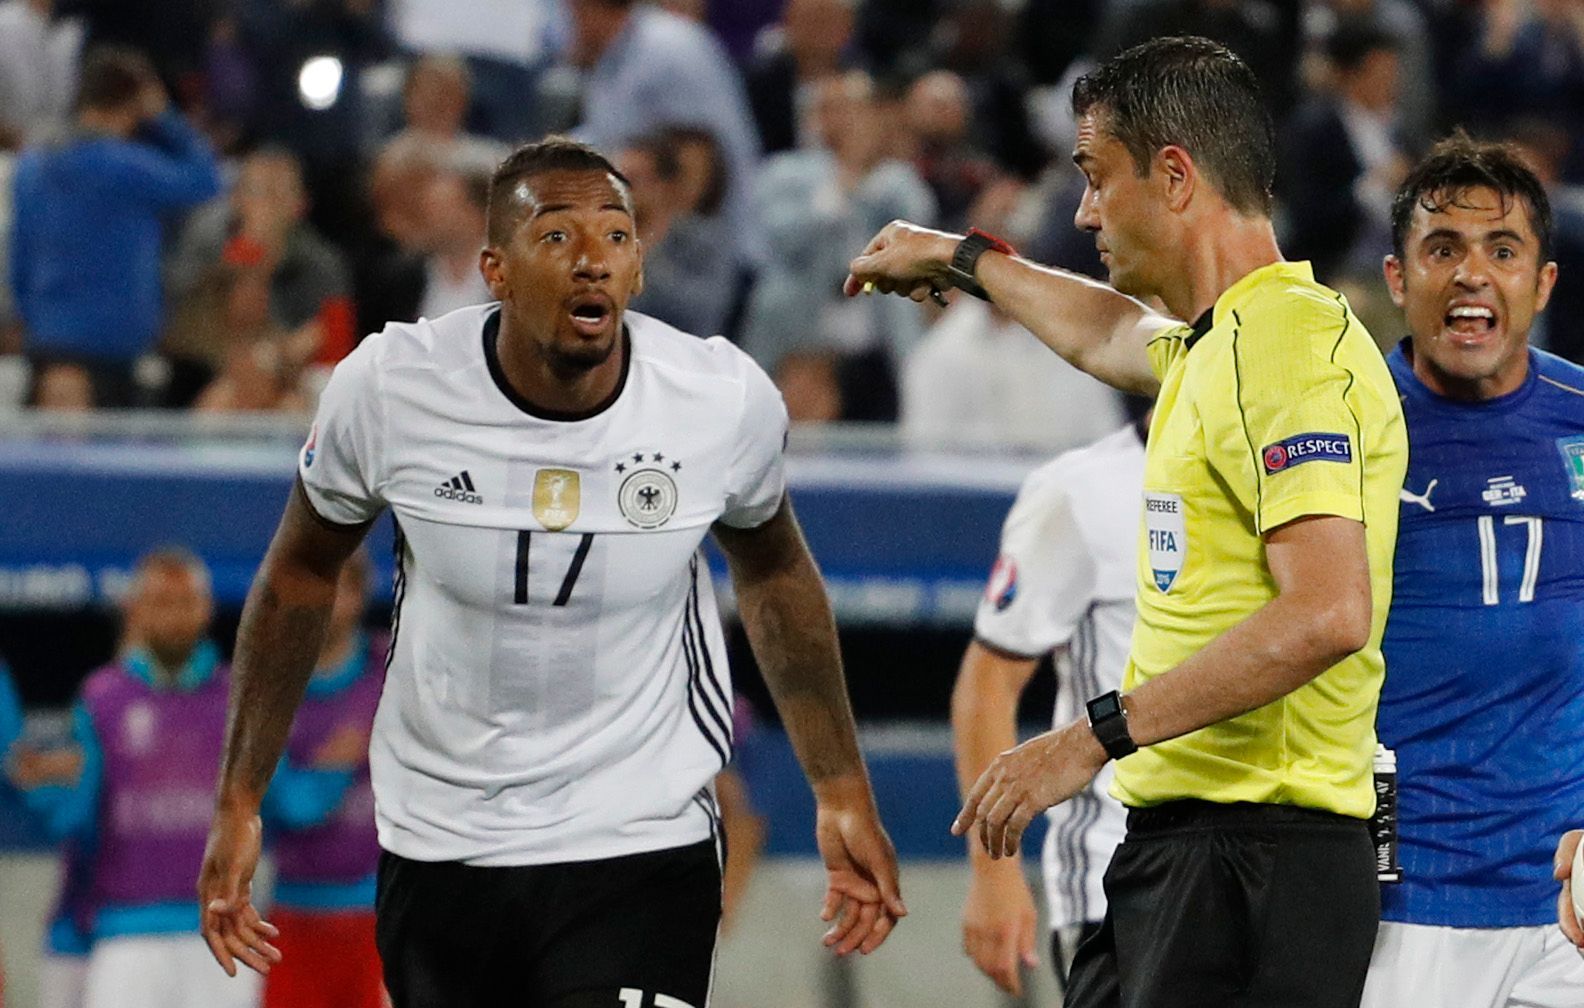 Euro 2016, Německo-Itálie: rozhodčí Viktor Kassai nařizuje penaltu po ruce Jeromeho Boatenga